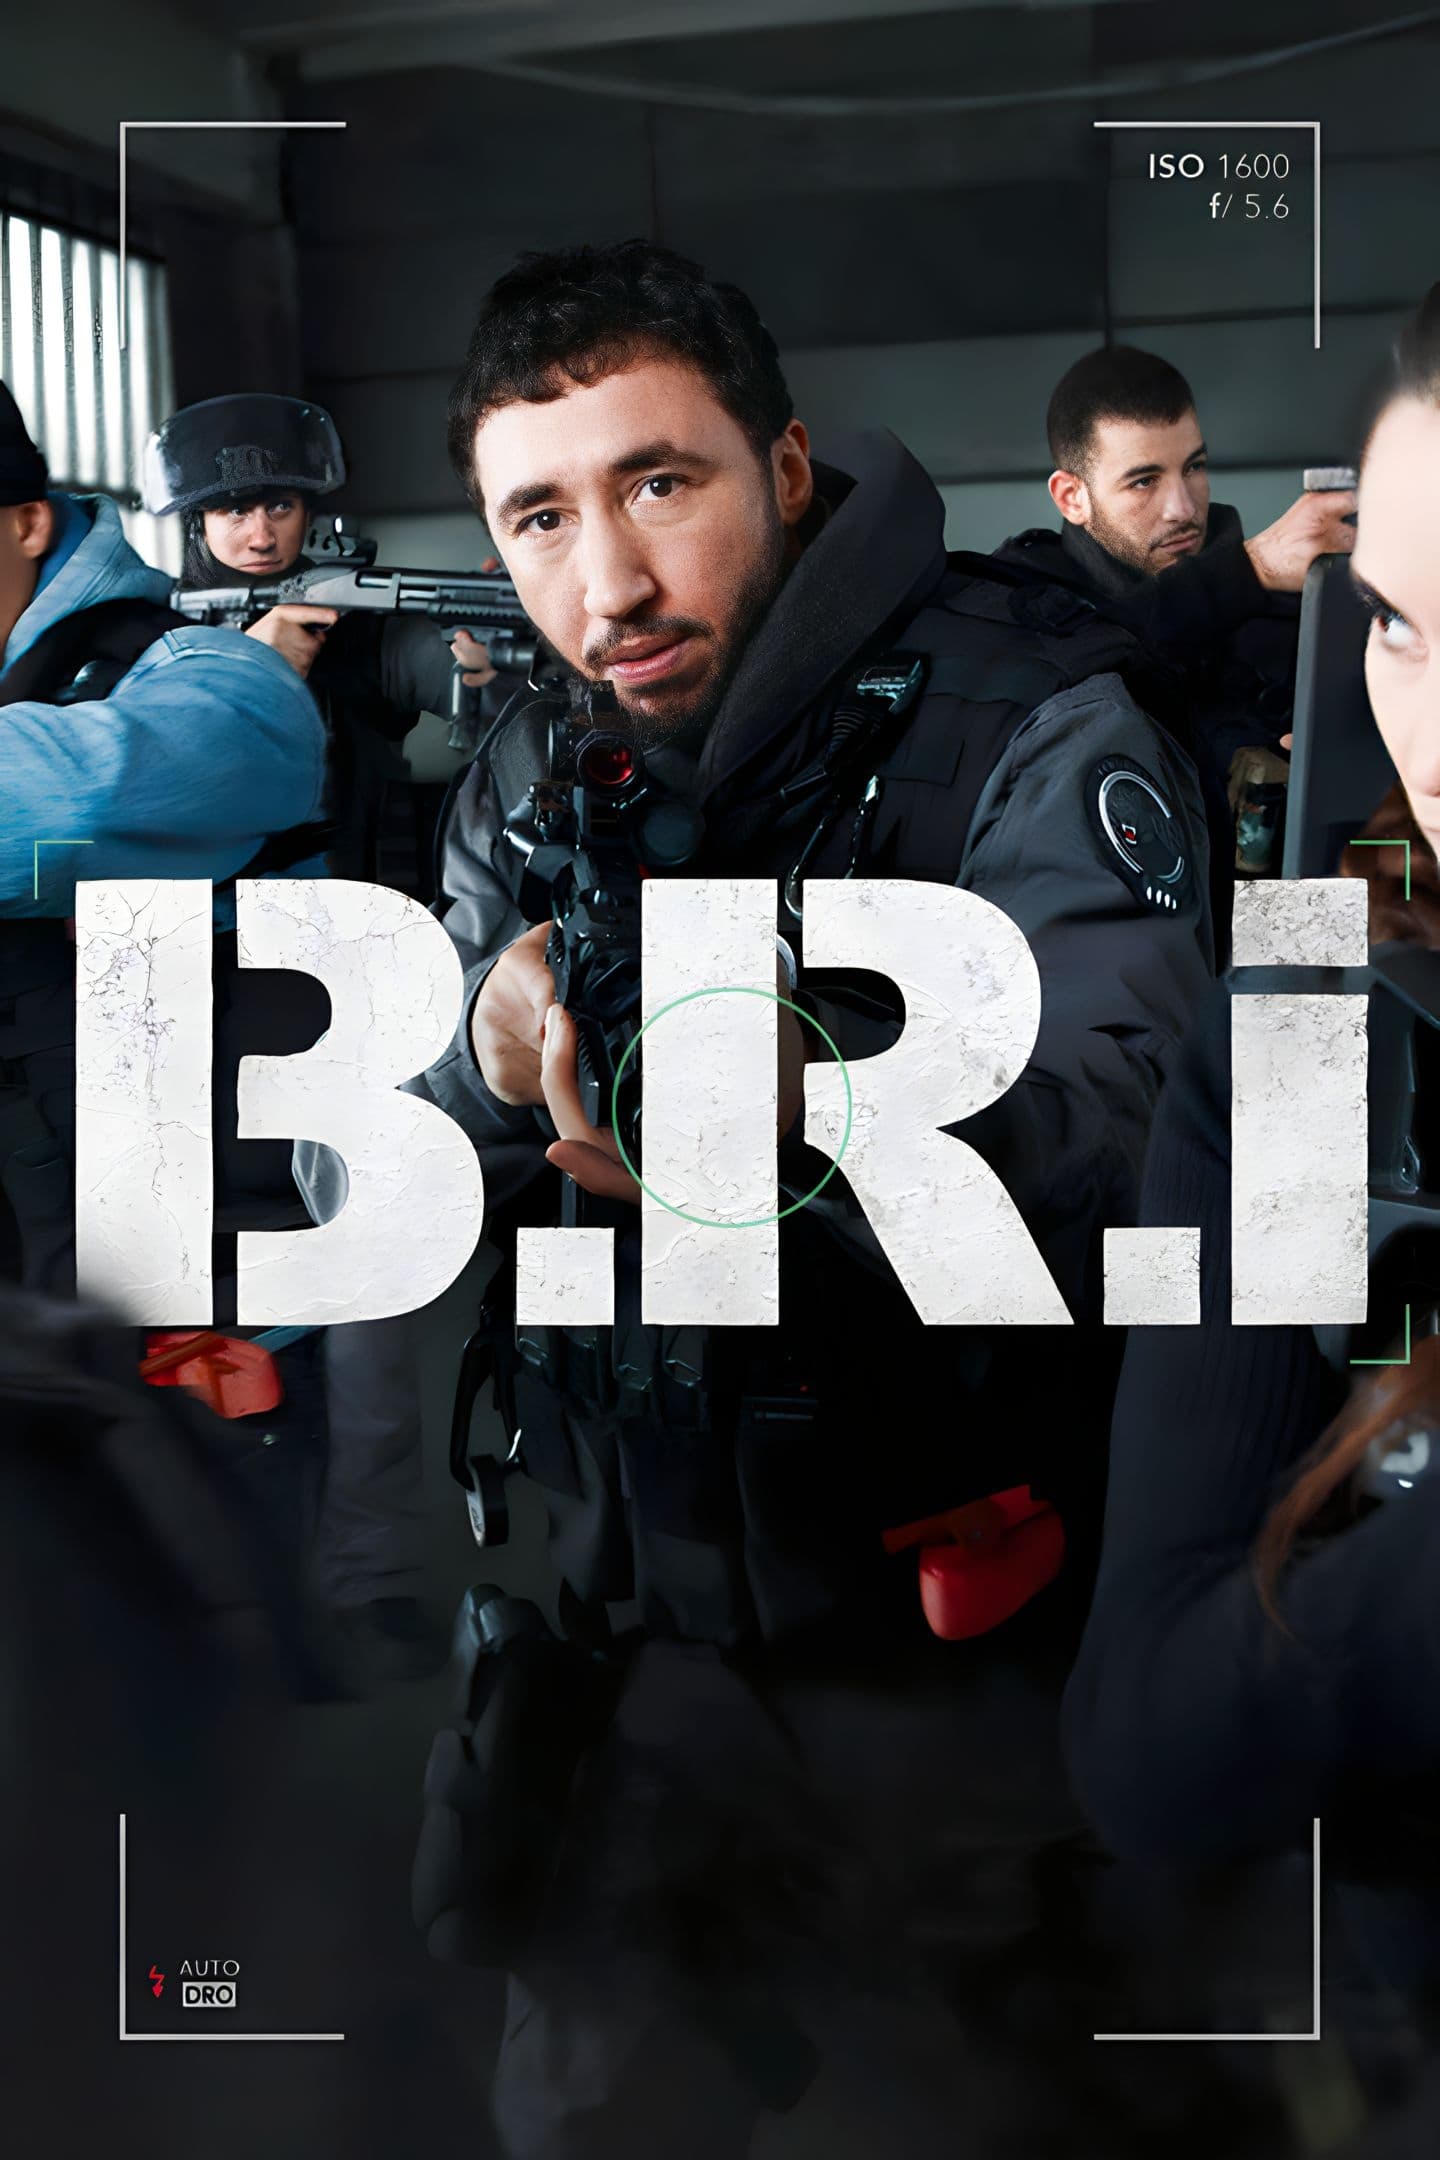 Plakát pro film “B.R.I.”